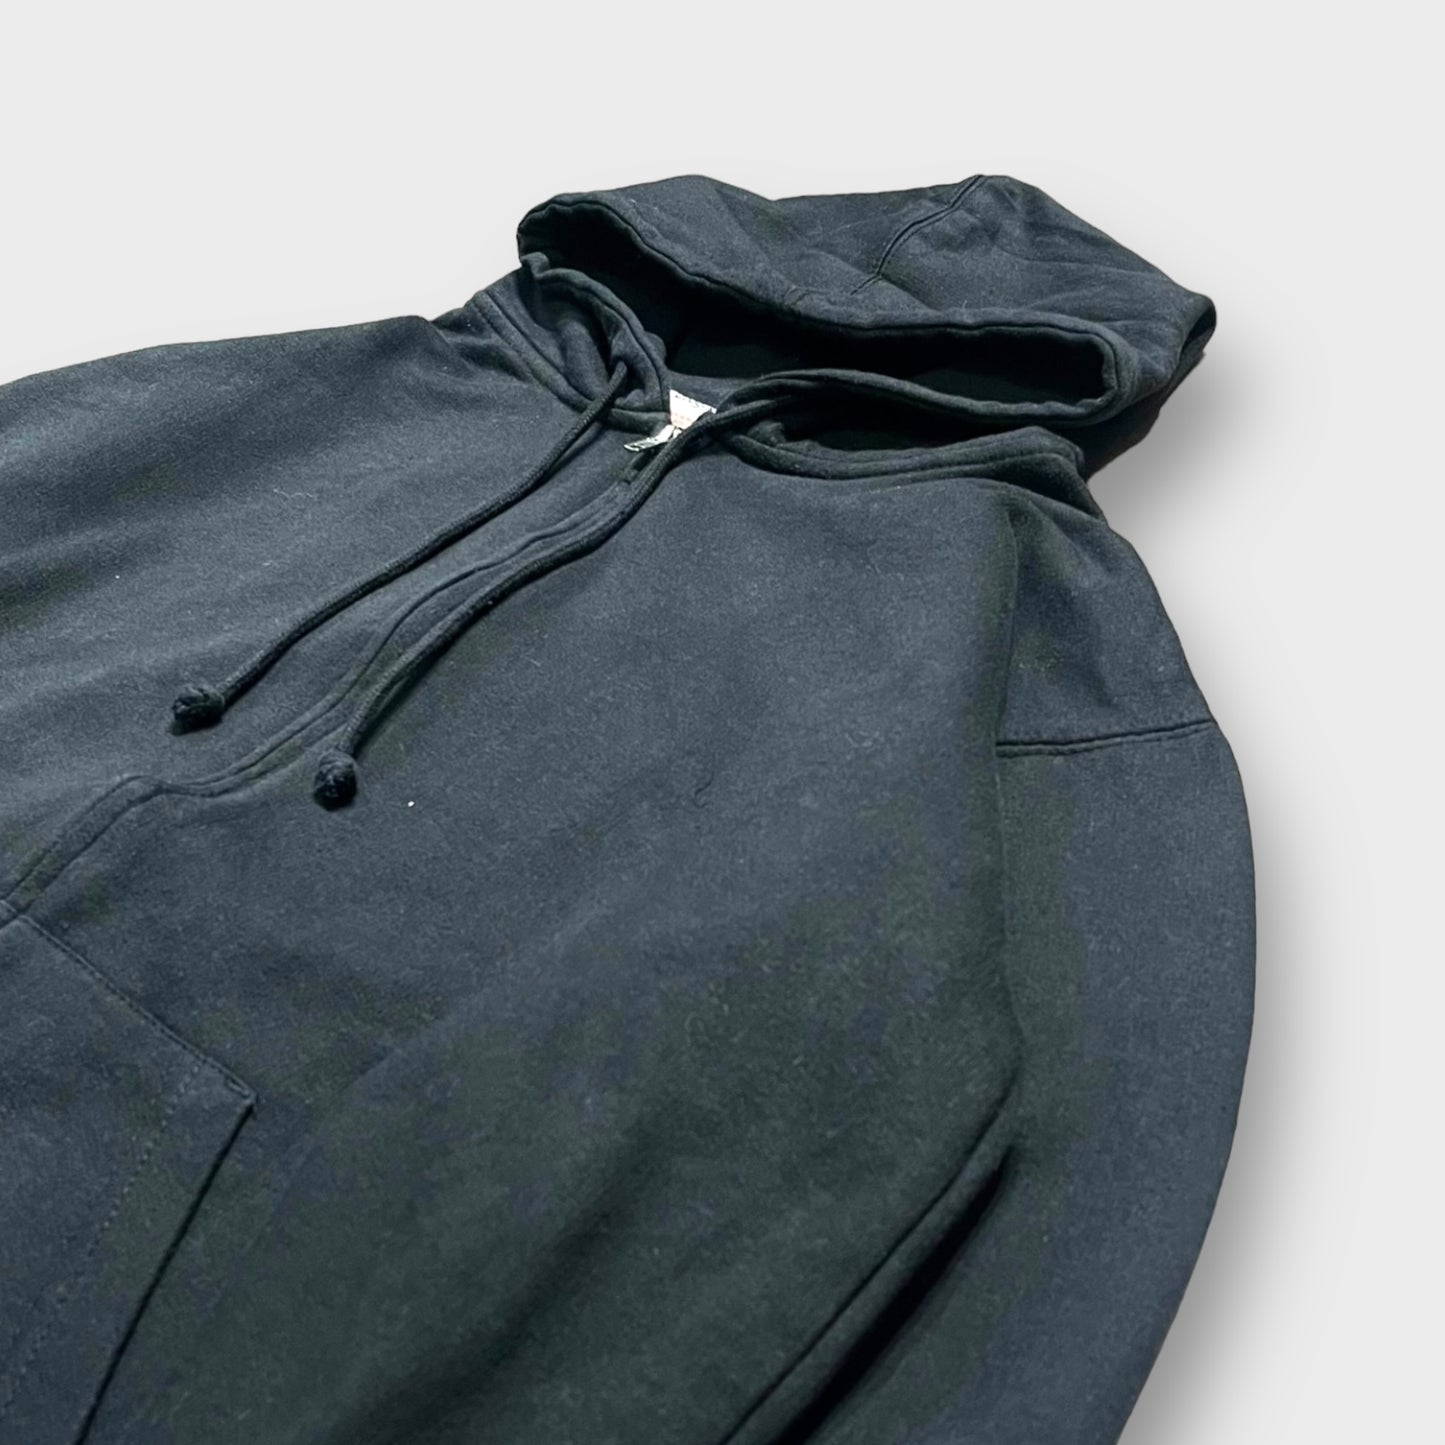 Flame design full zip hoodie